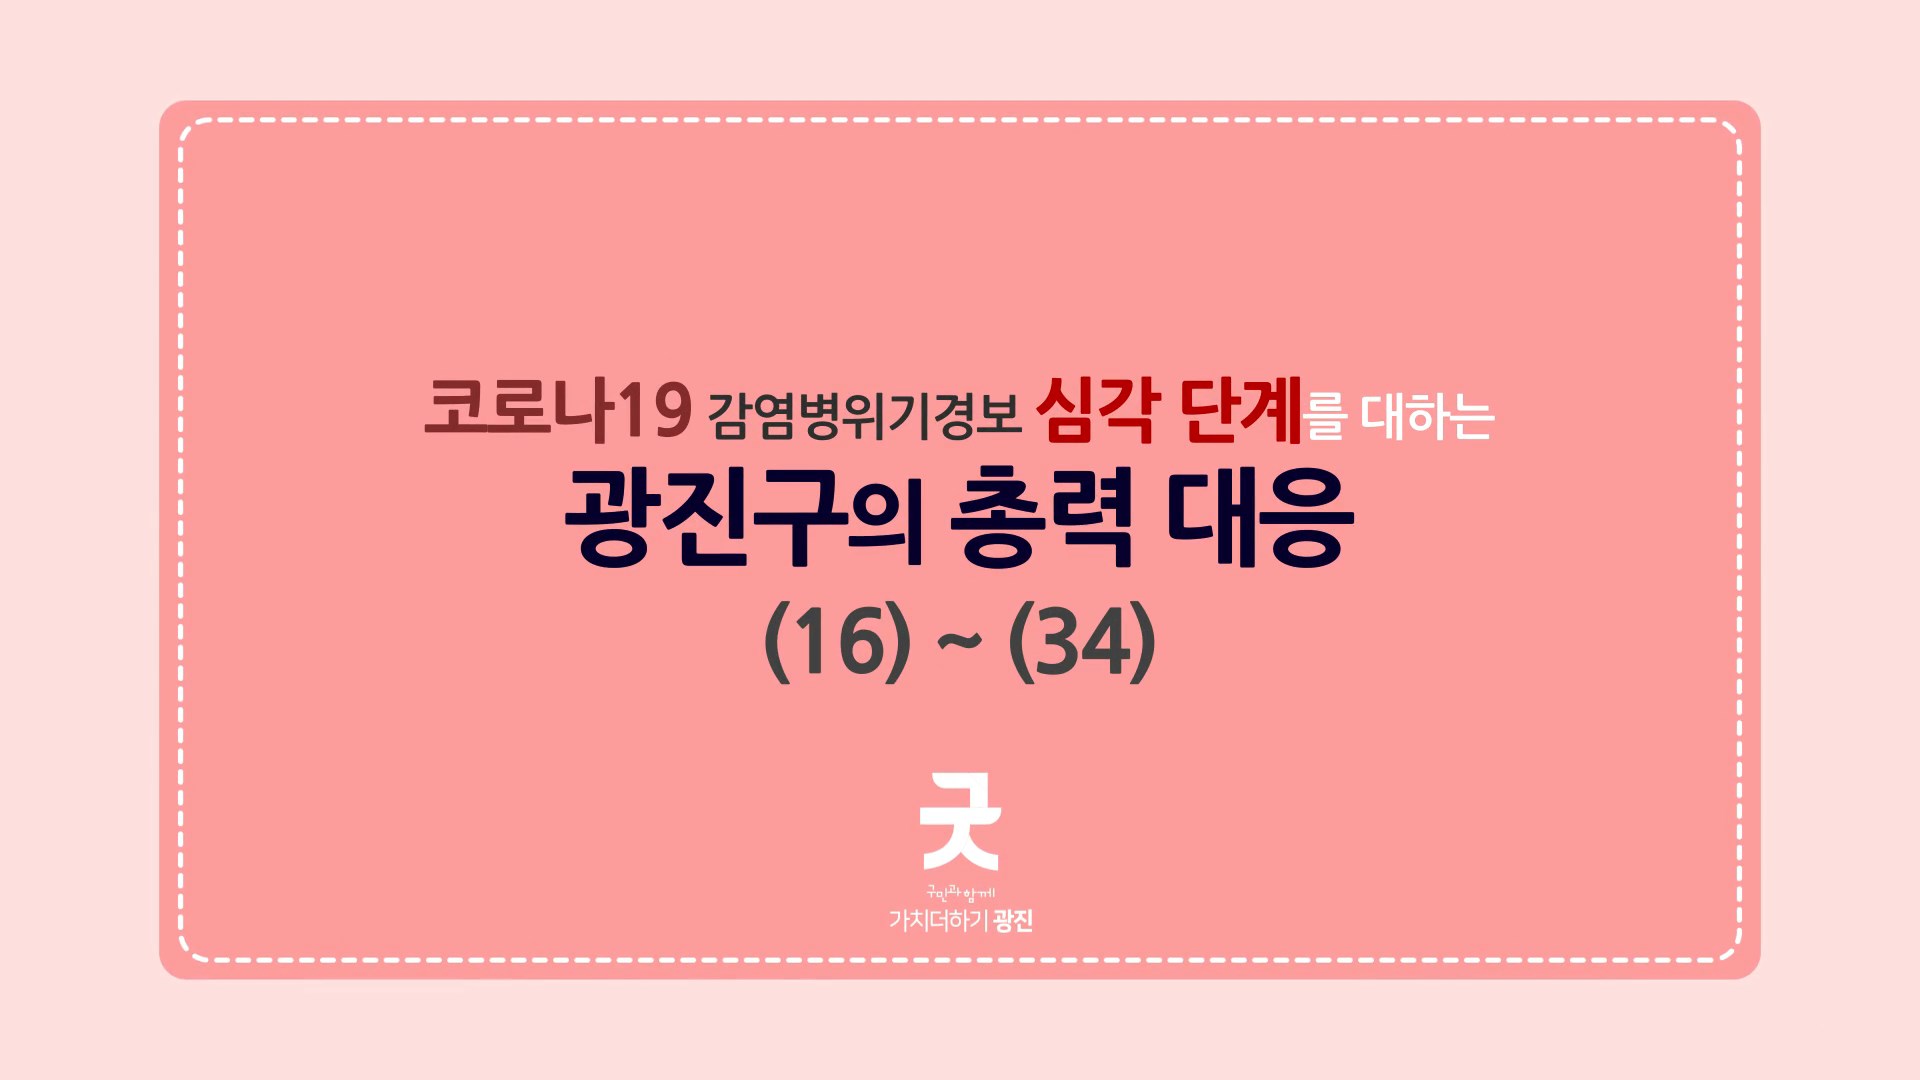 코로나19 감염병위기경보 심각단계를 대하는 광진구의 총력 대응_카드뉴스(16~34) 